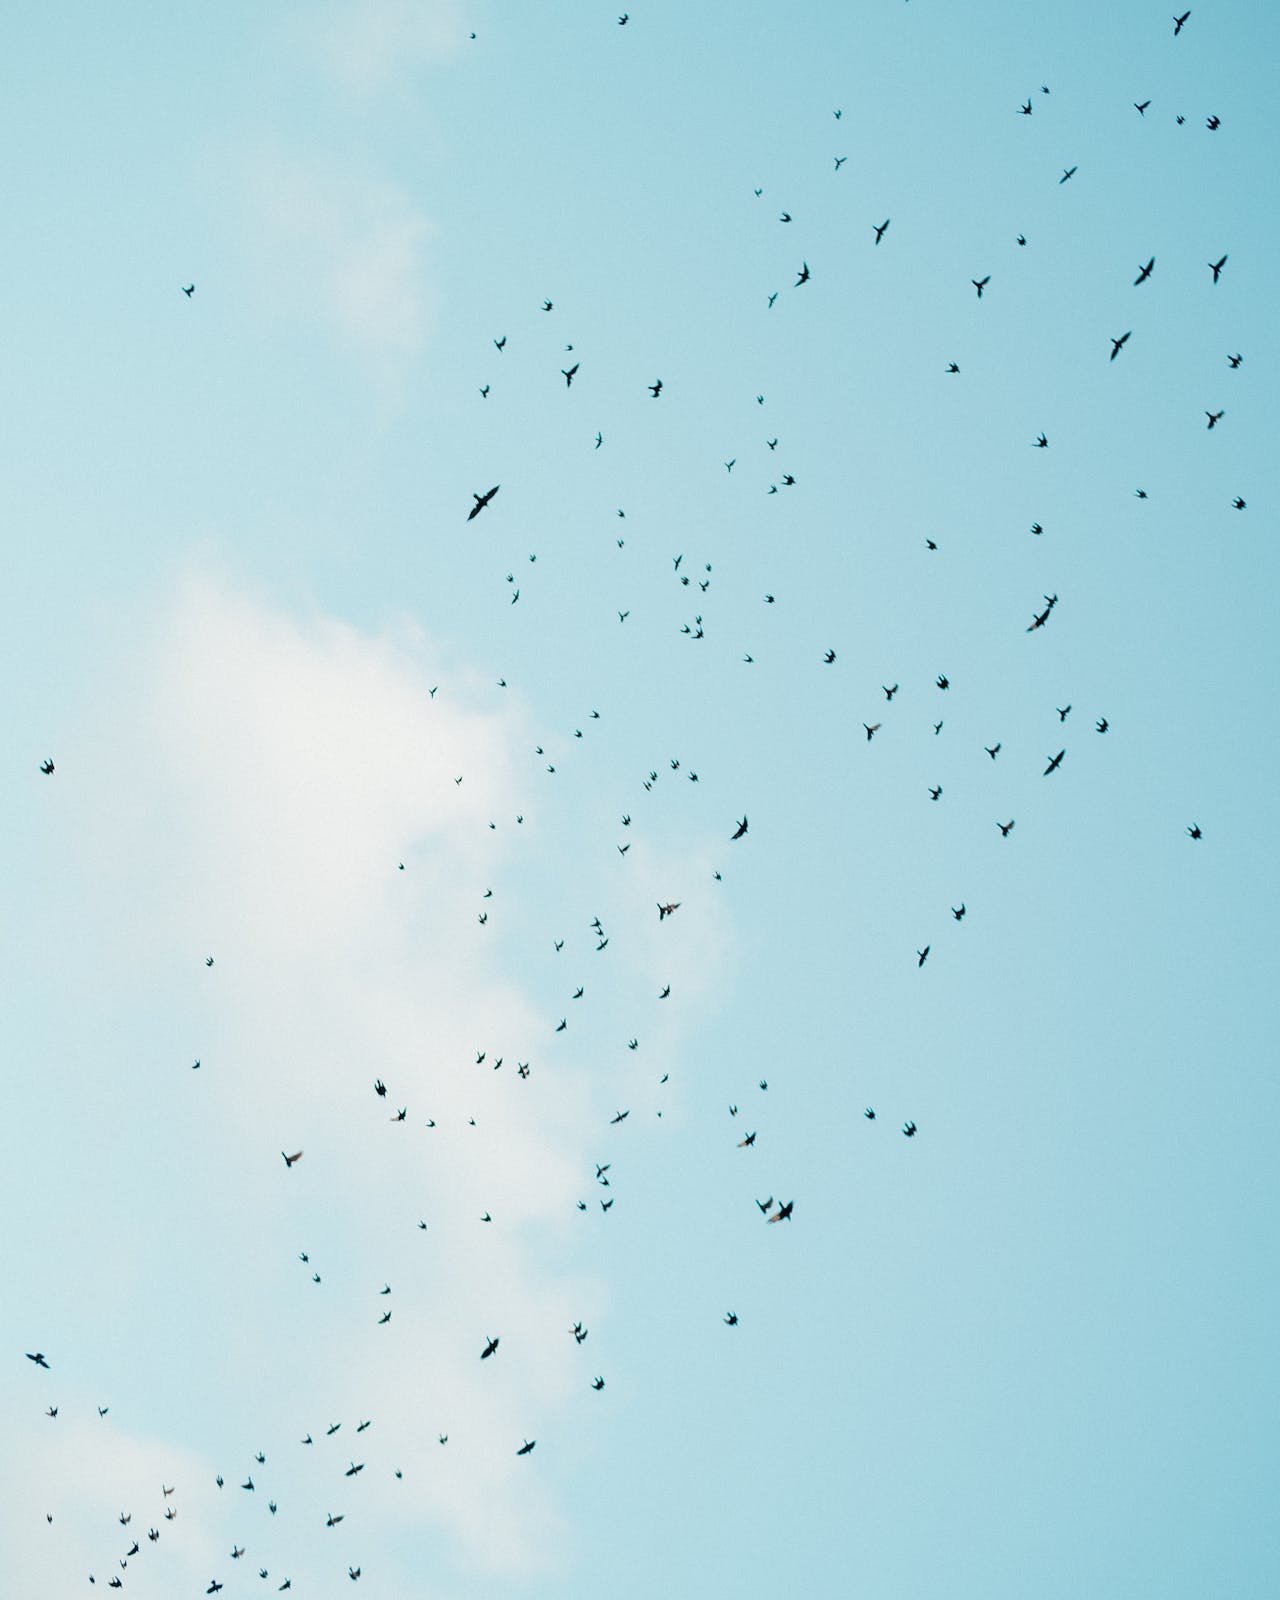 Birds flying in blue sky in daylight-Medium.jpg